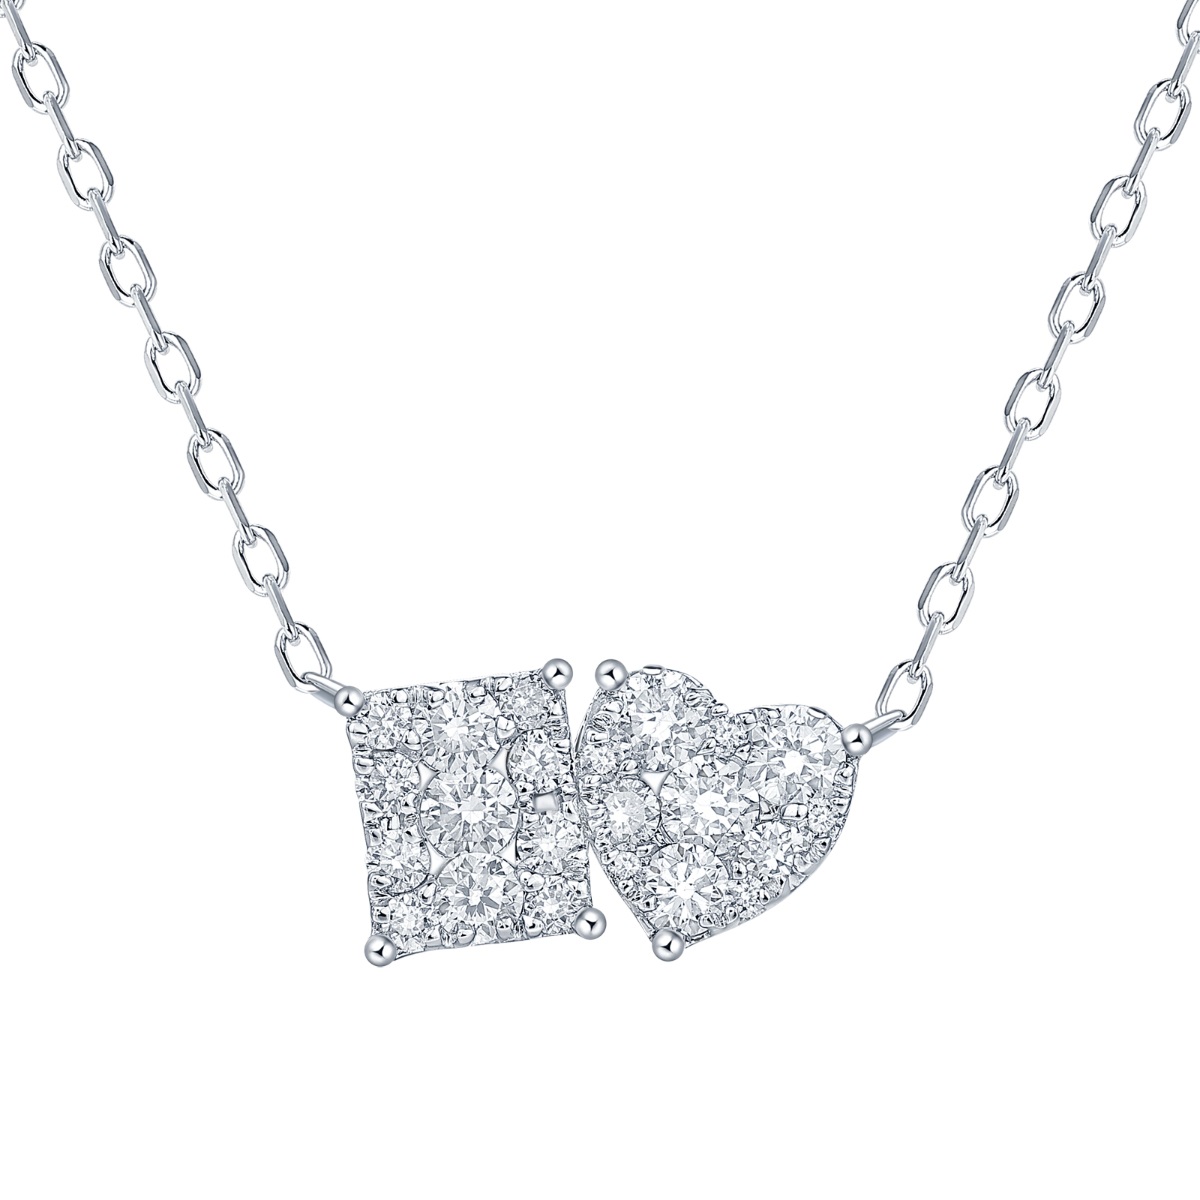 NL37088WHT – 18K White Gold Diamond Necklace, 0.45 TCW